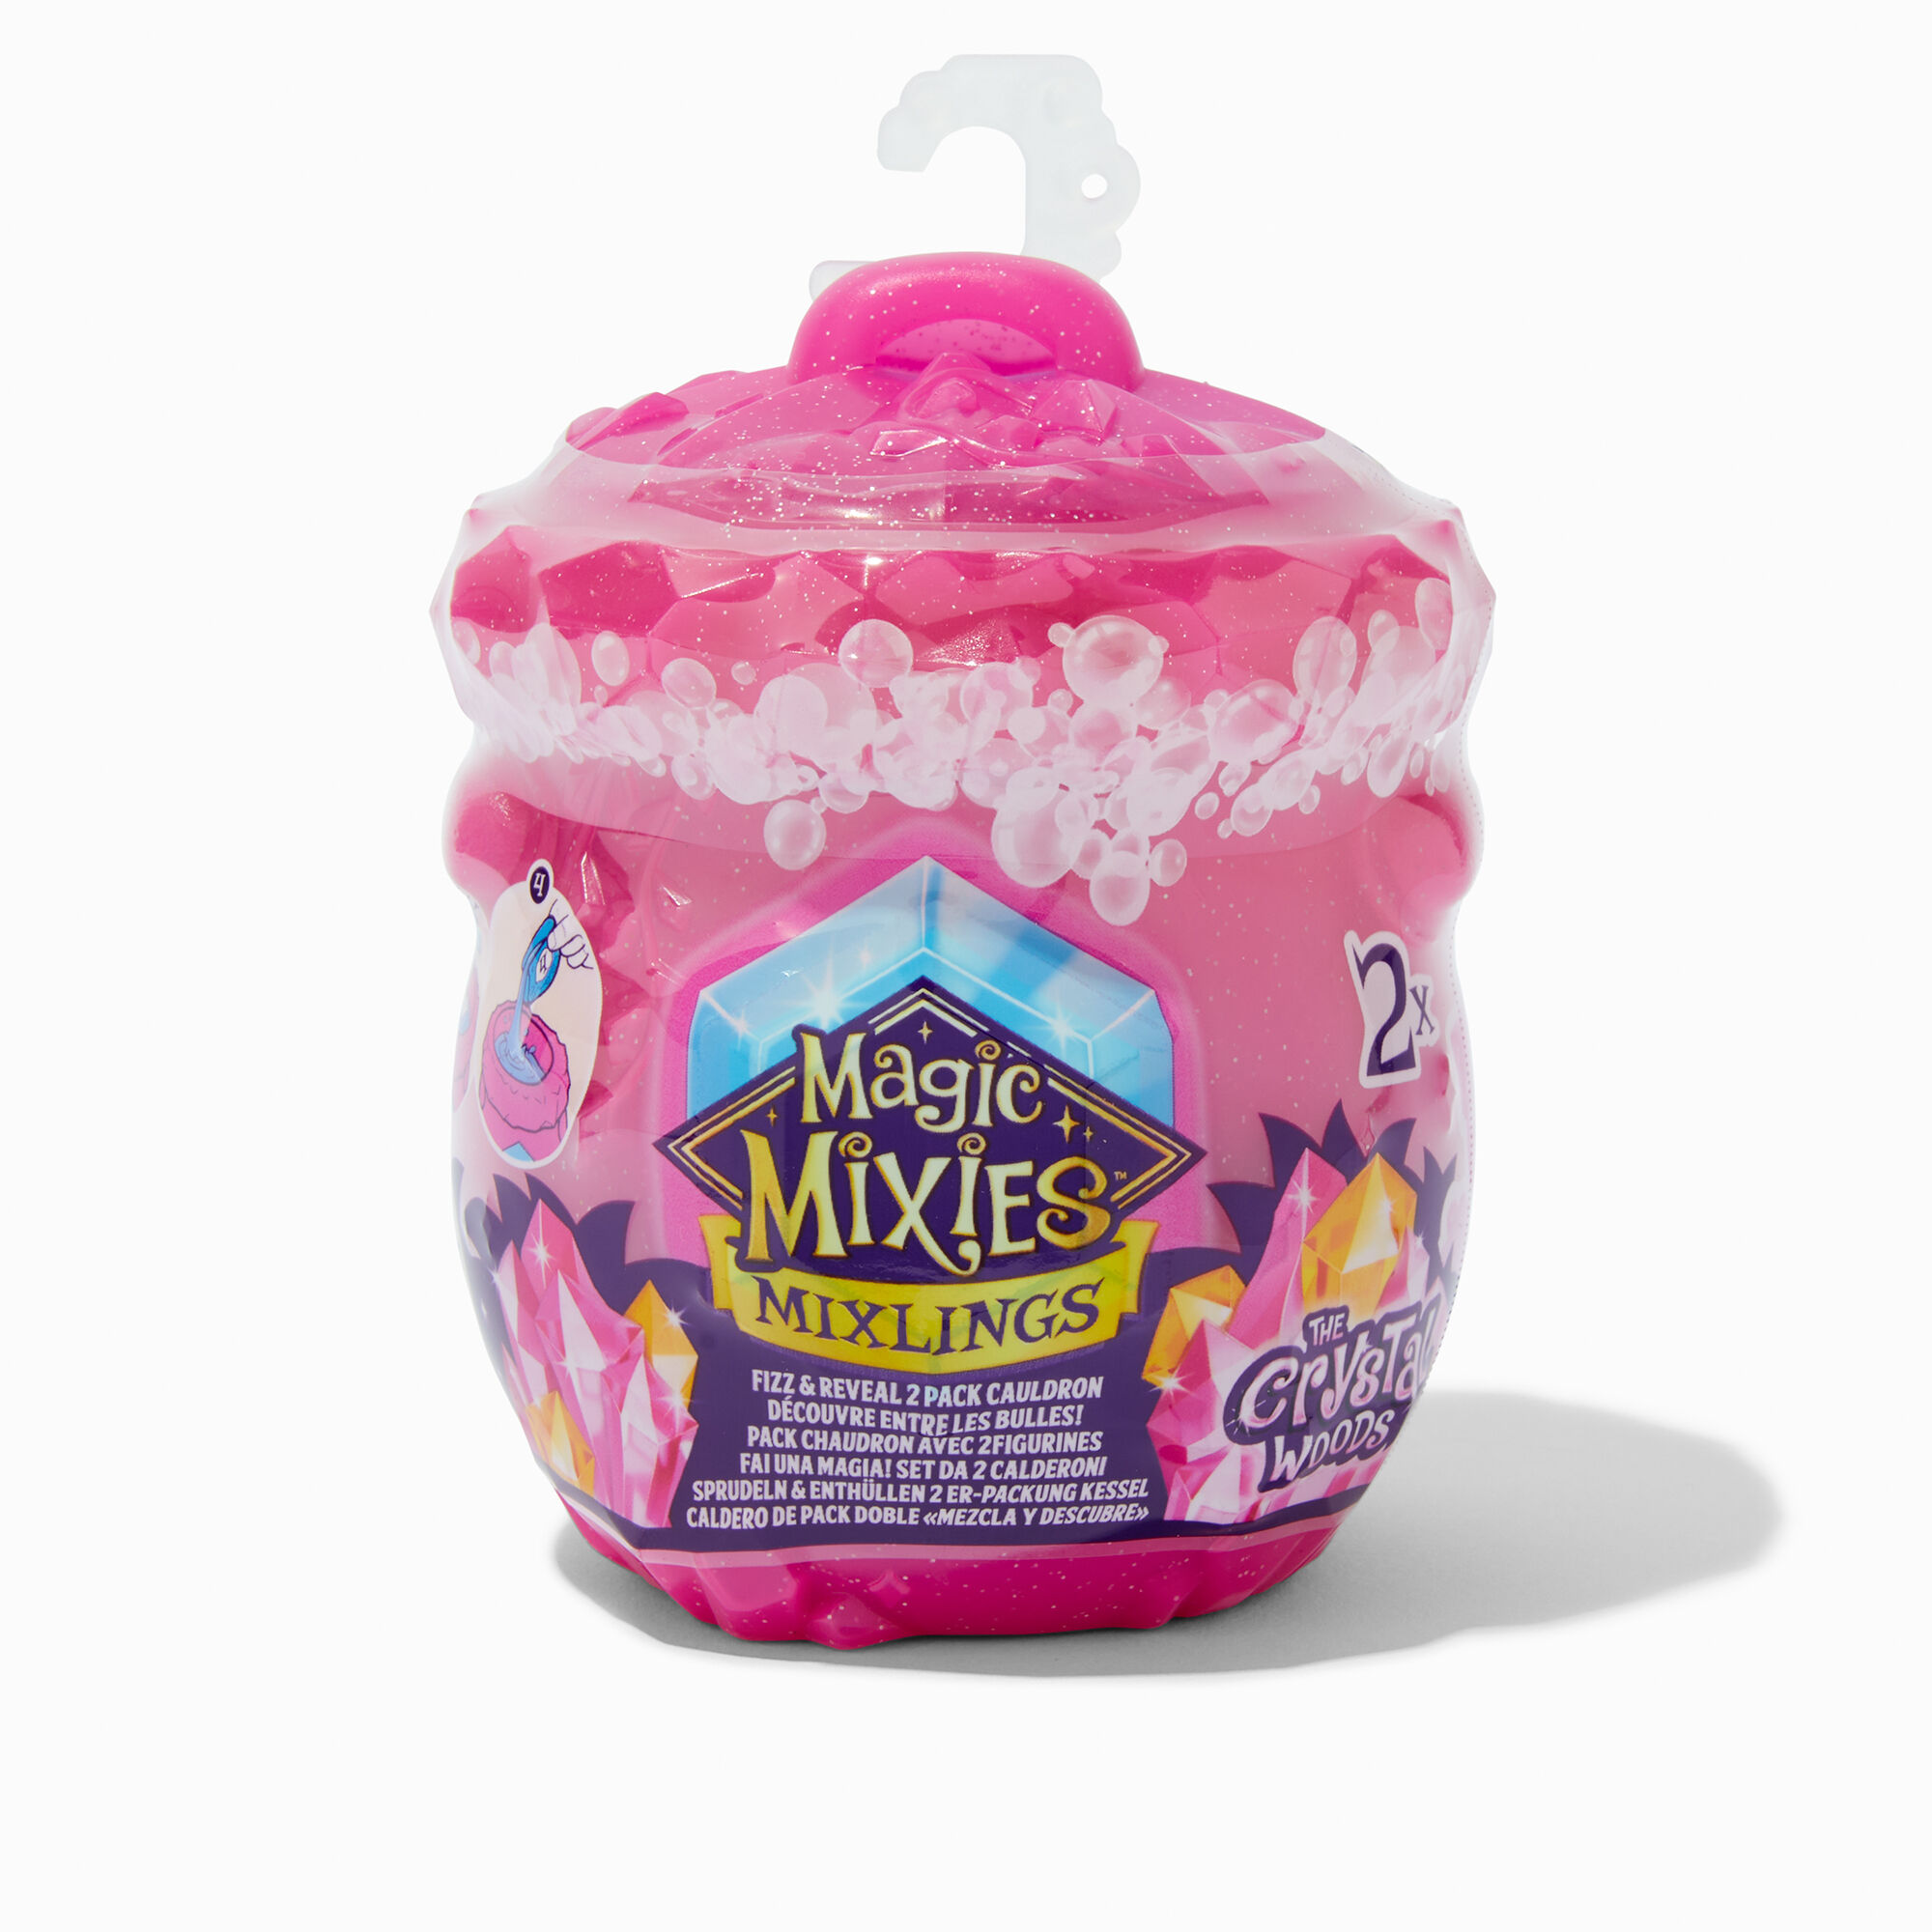 Claire's Pochette surprise Magic Mixies™ Mixlings à collectionner Chaudron Série 3 - Lot de 2, les m